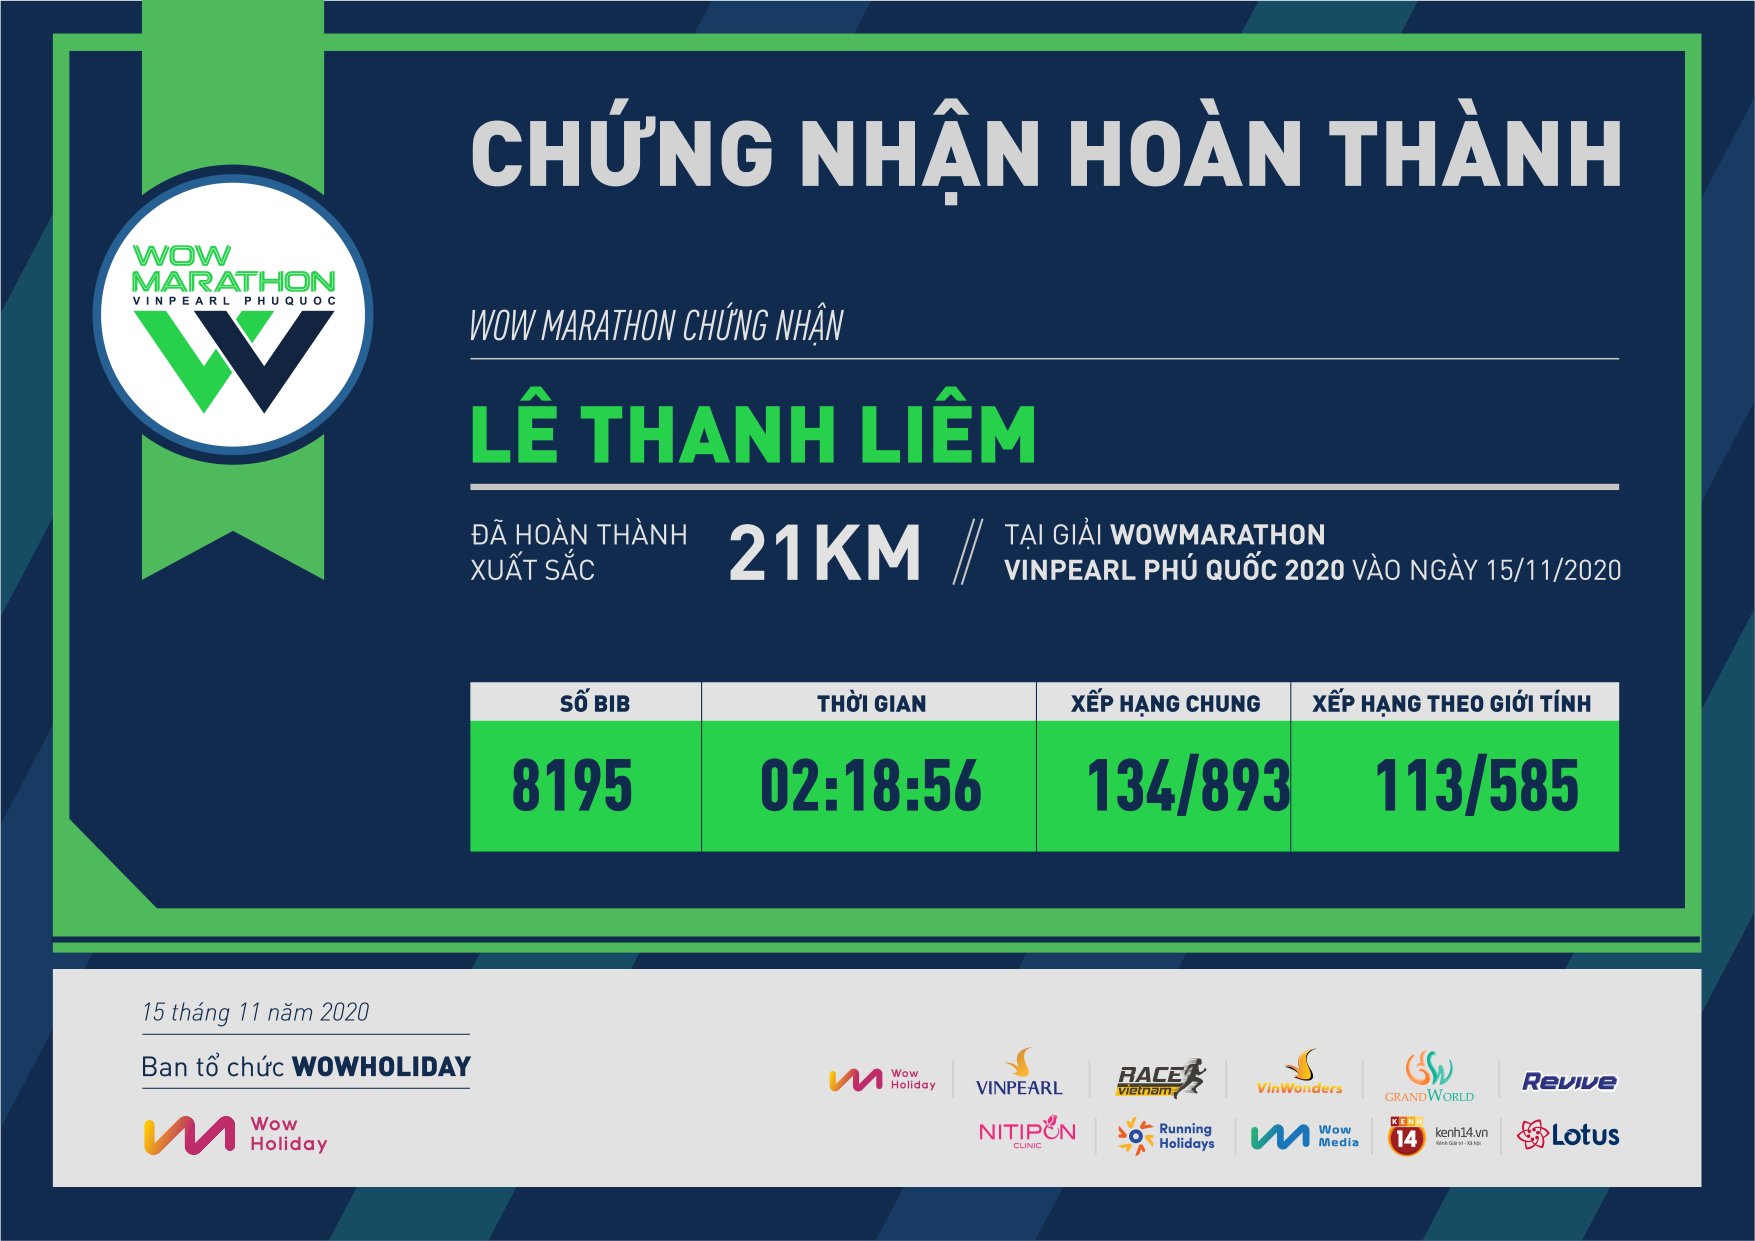 8195 - Lê Thanh Liêm